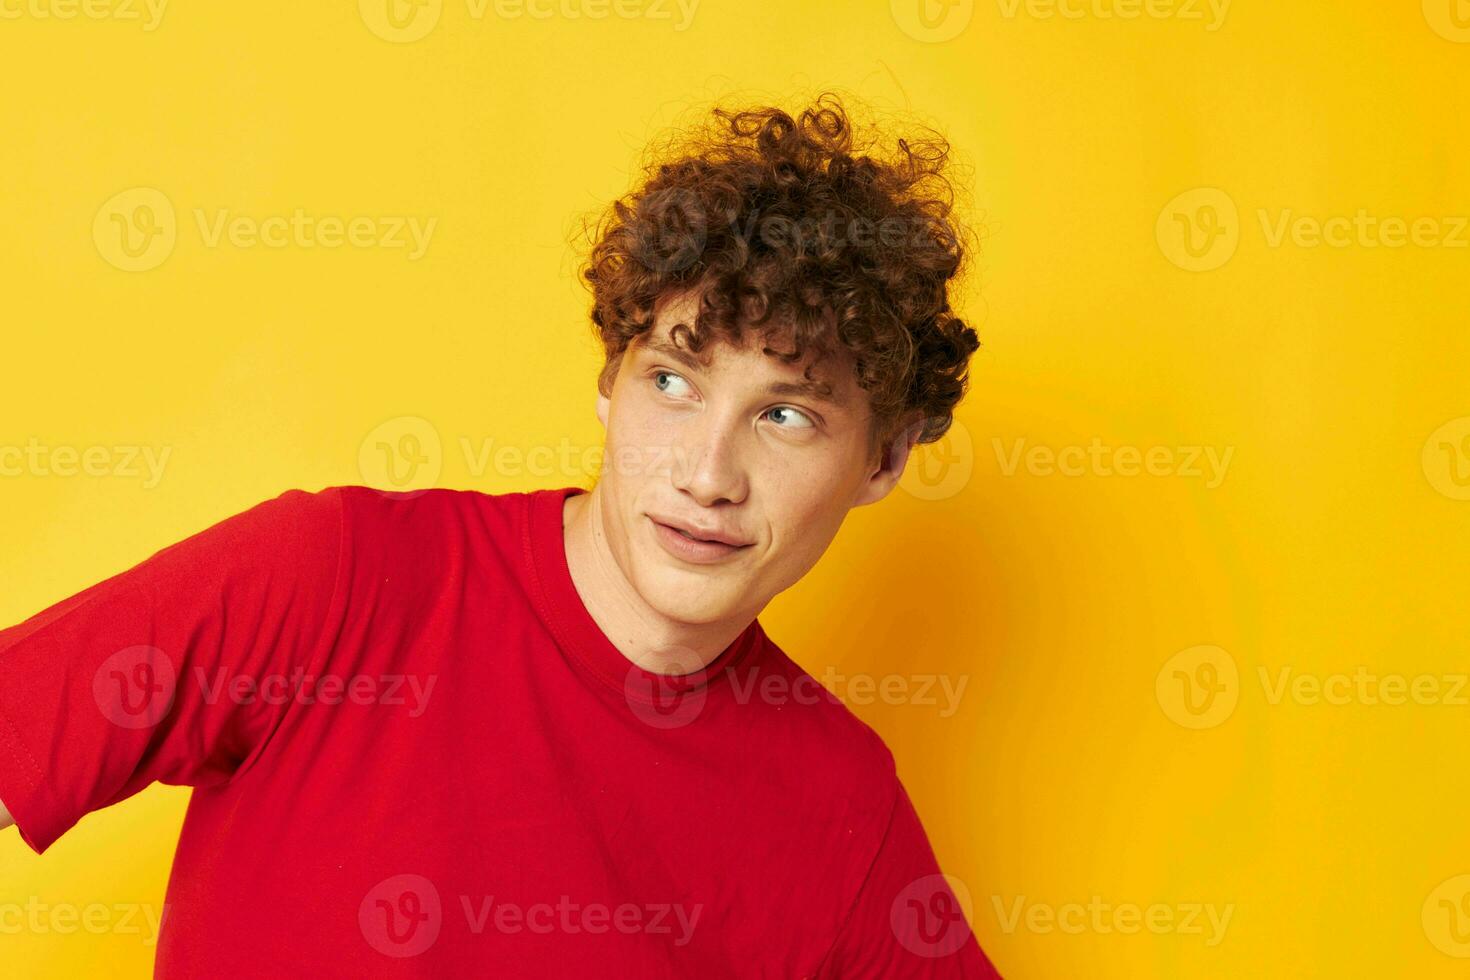 chico con rojo Rizado pelo verano estilo Moda posando amarillo antecedentes inalterado foto